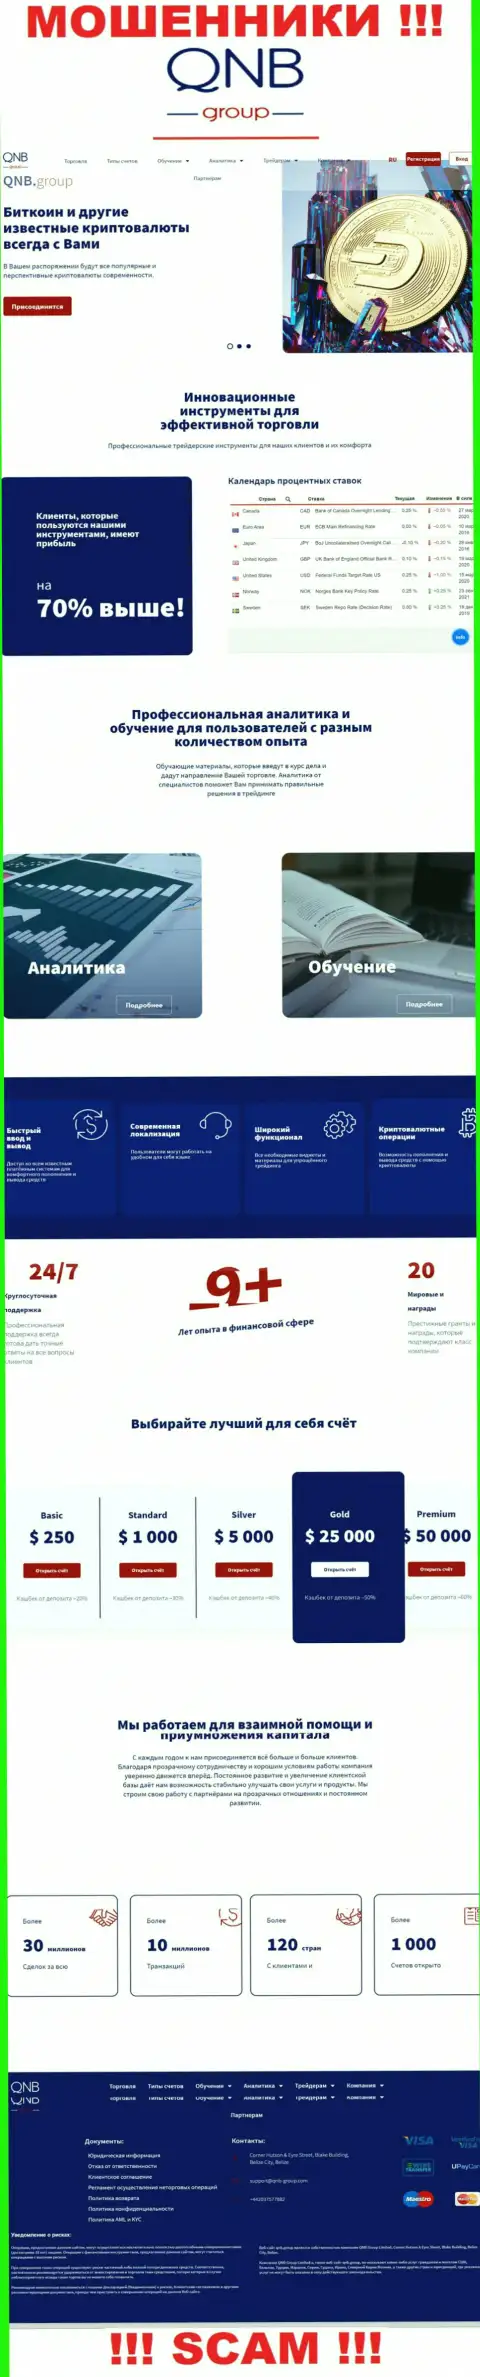 Официальный интернет-портал мошенников QNB Group, забитый инфой для лохов